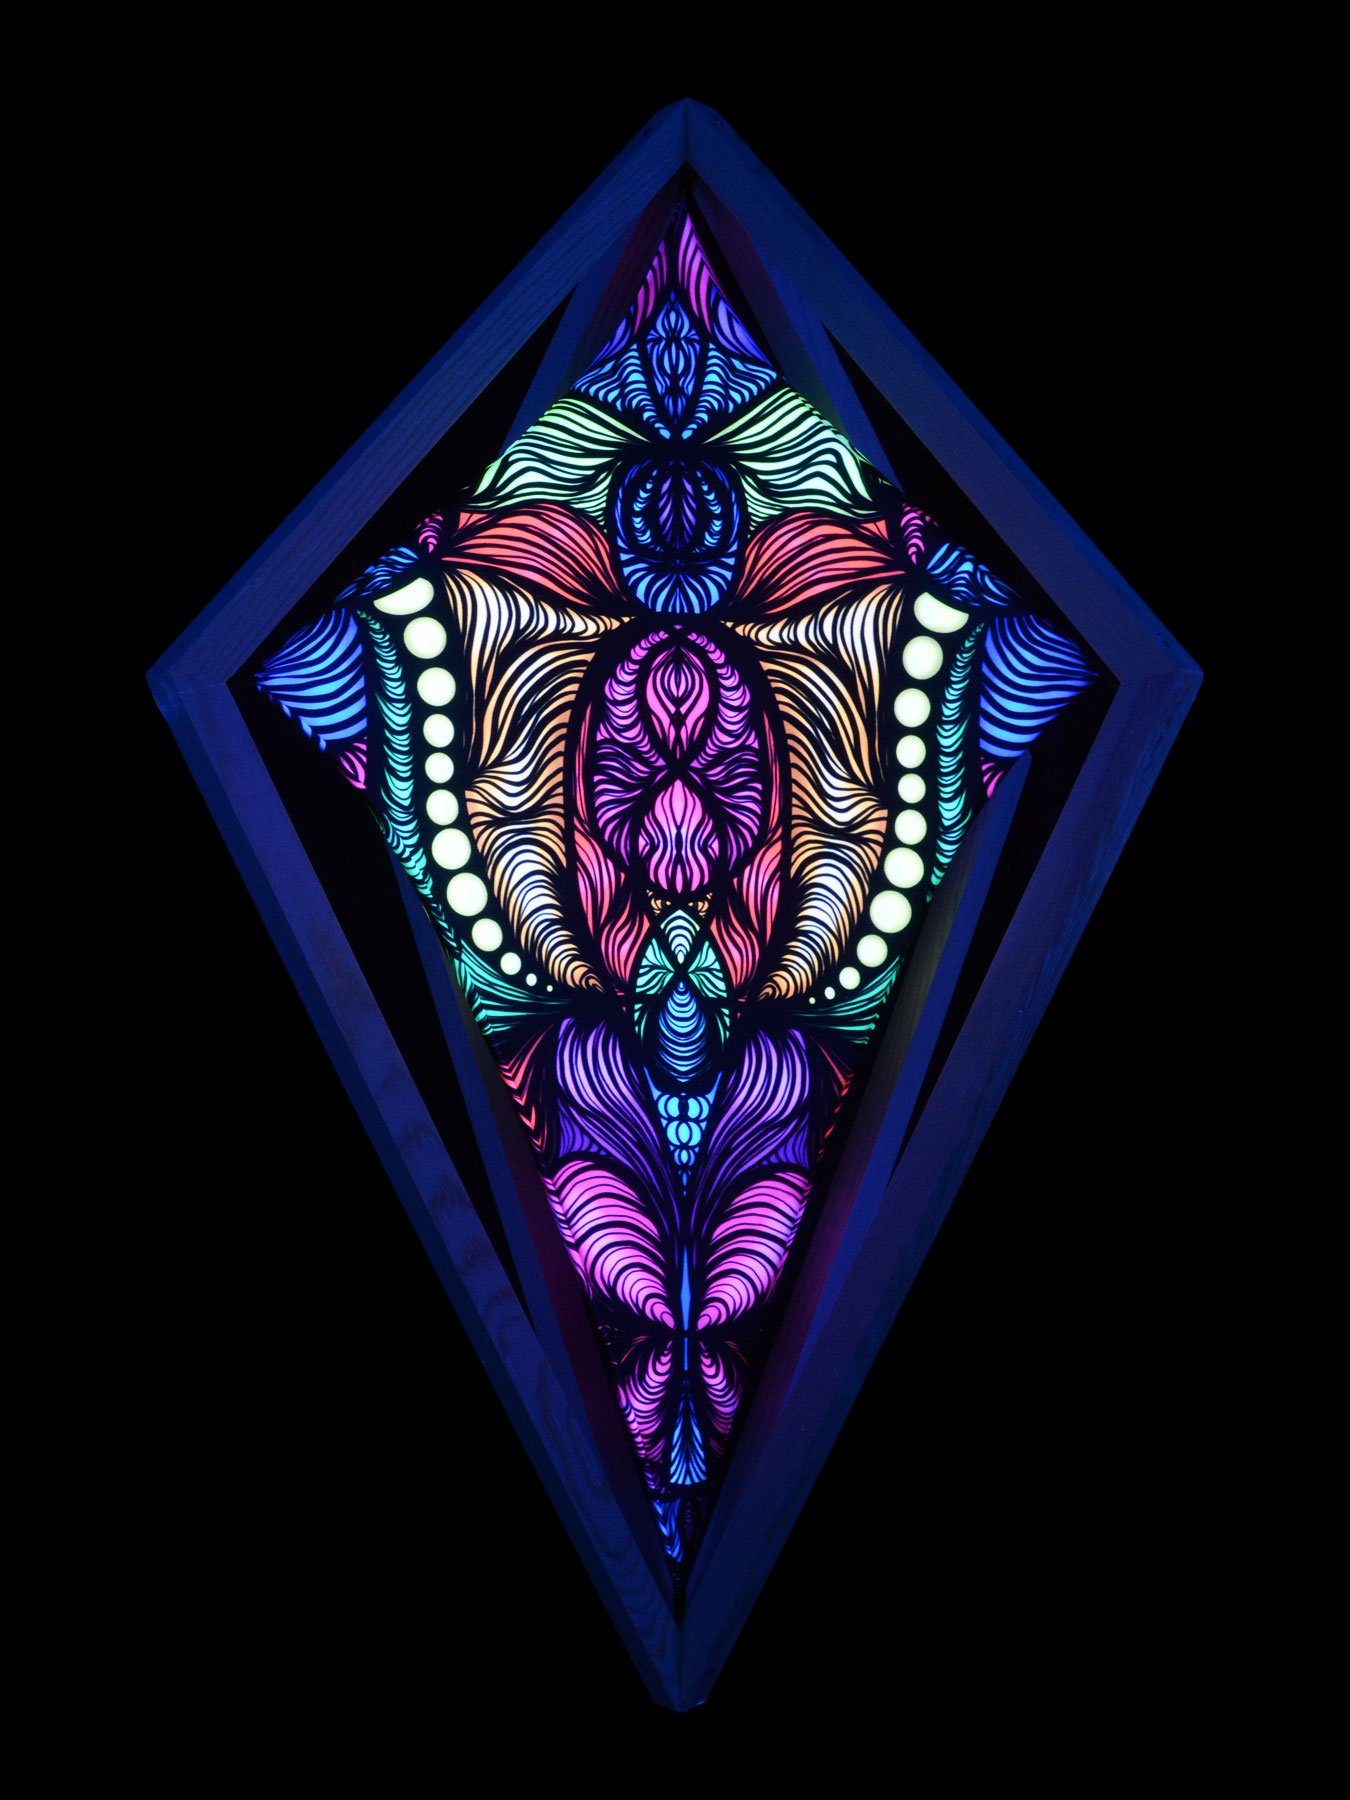 Wanddekoobjekt Schwarzlicht 3D Schwarzlicht Raute 60x86cm, Field unter PSYWORK UV-aktiv, leuchtet "Magnetic Spandex Neon",